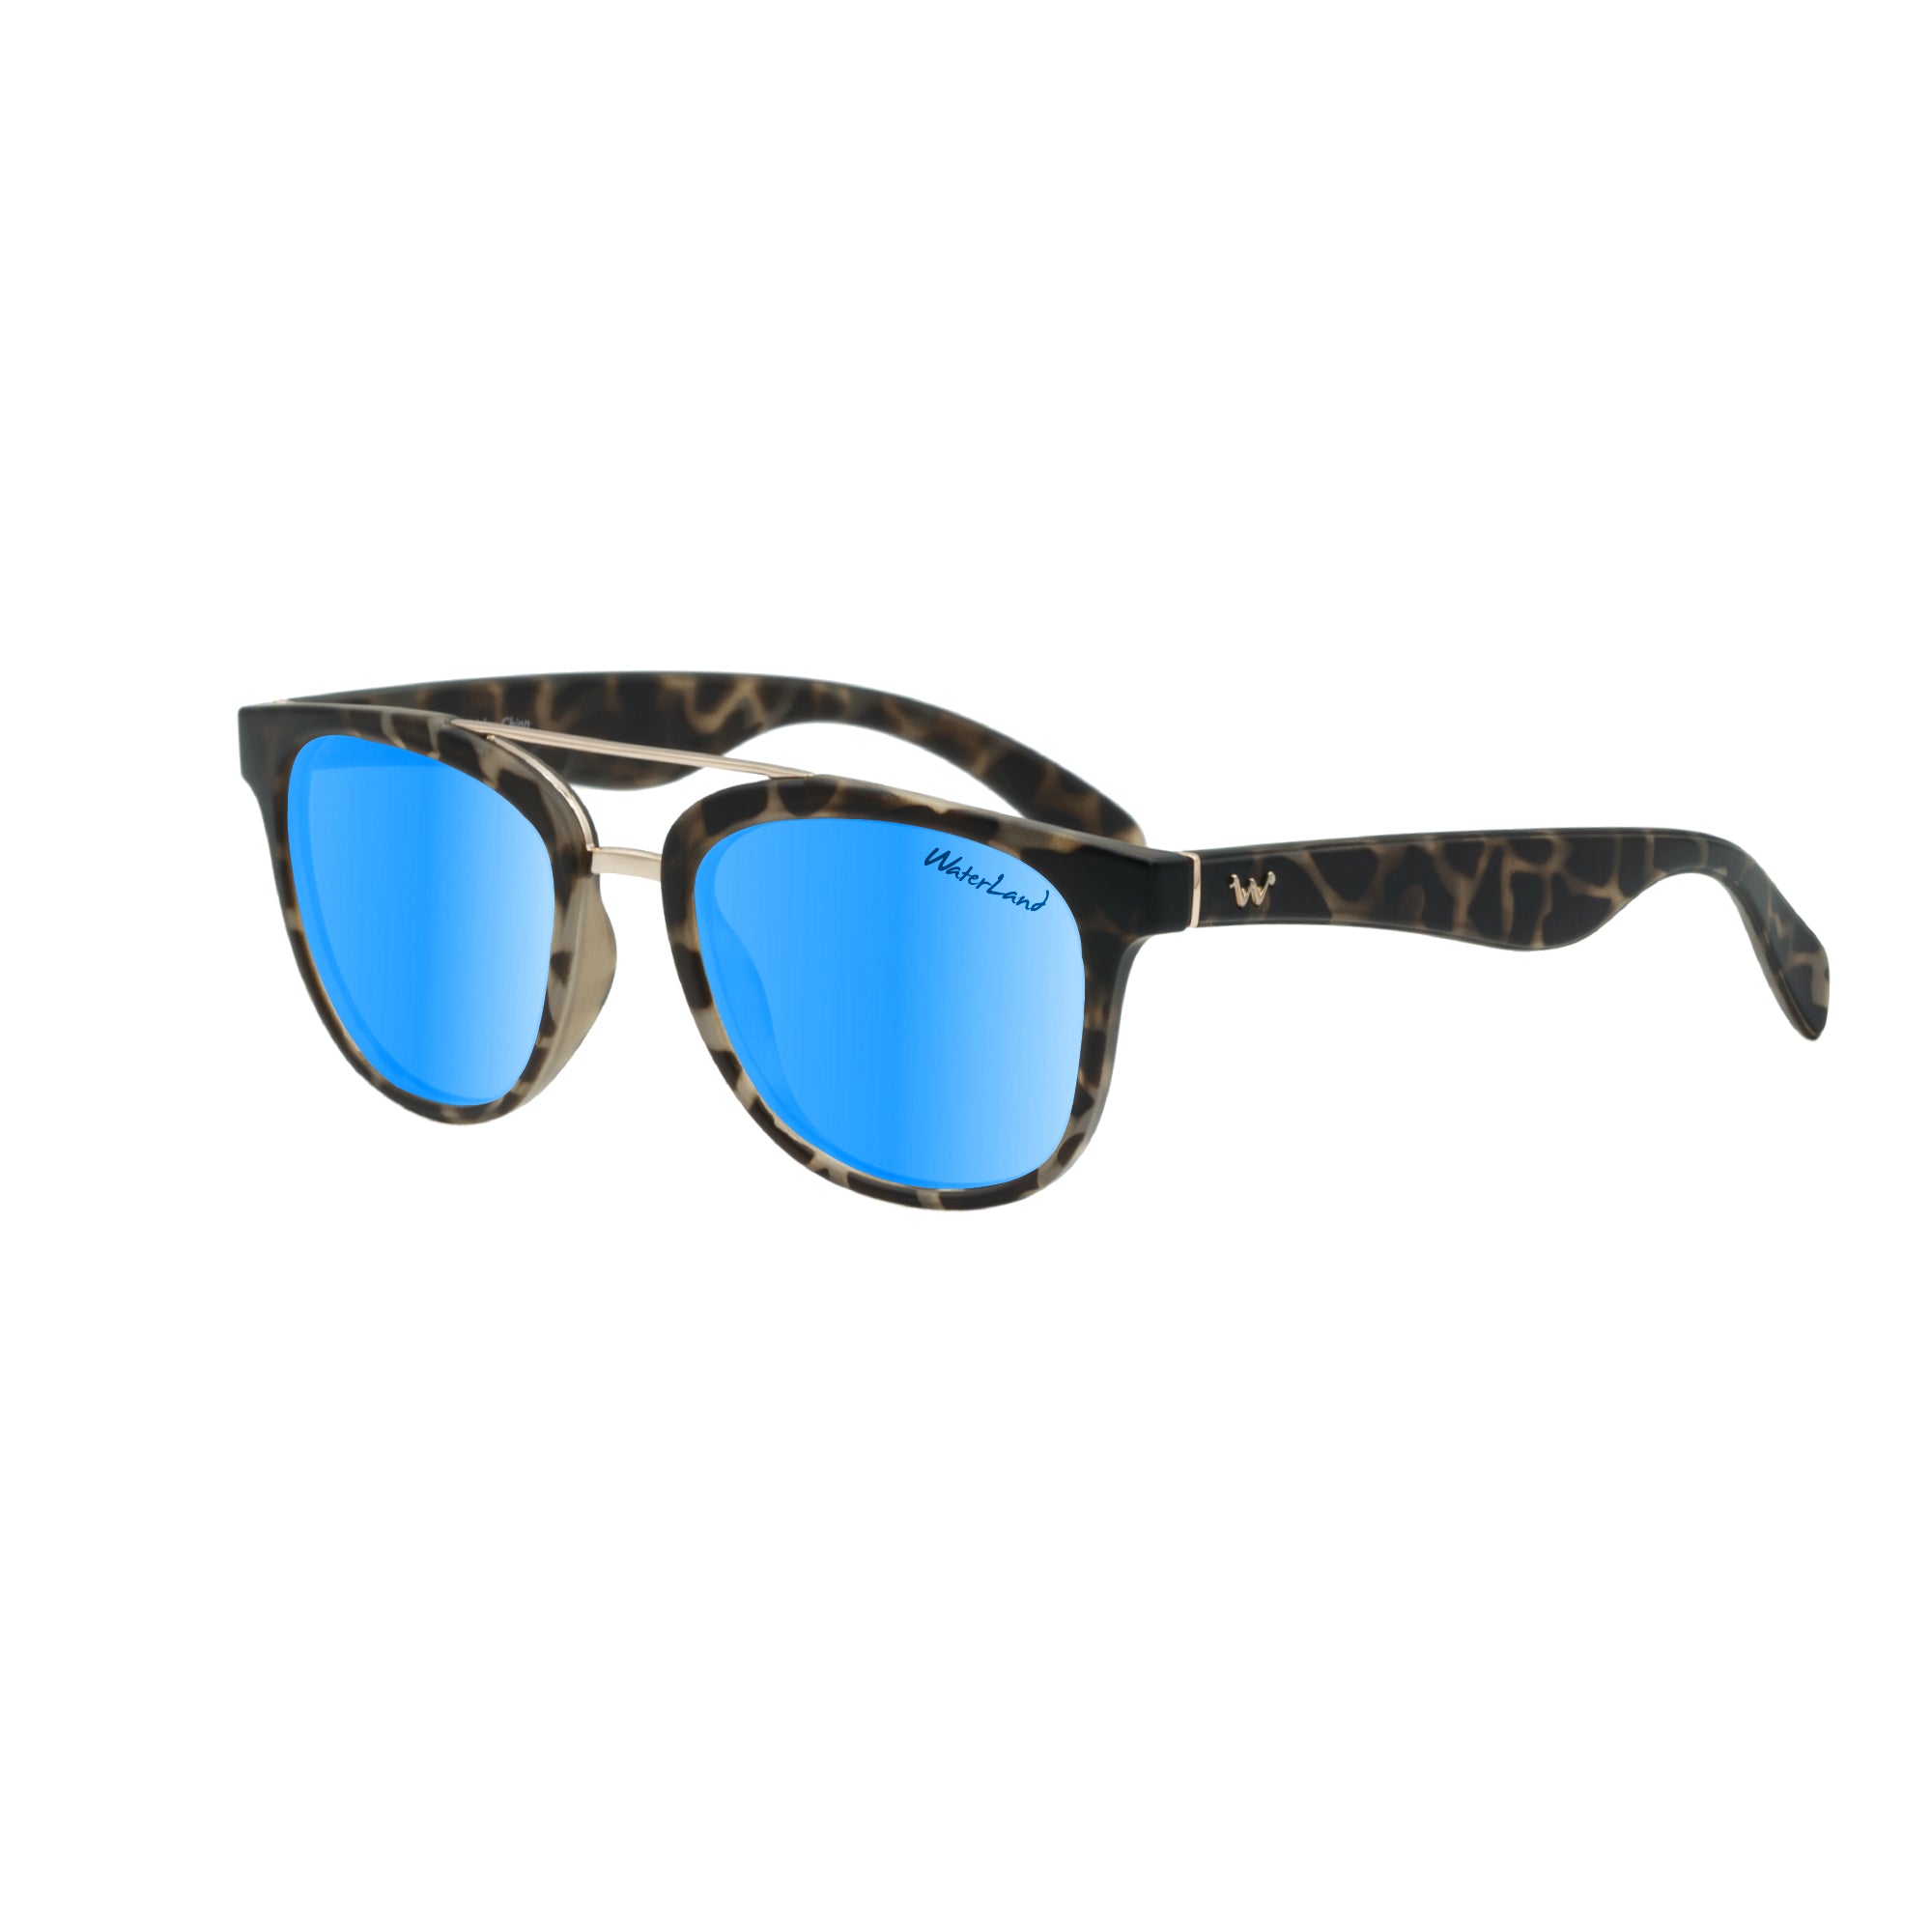 Waterland Sunglasses 